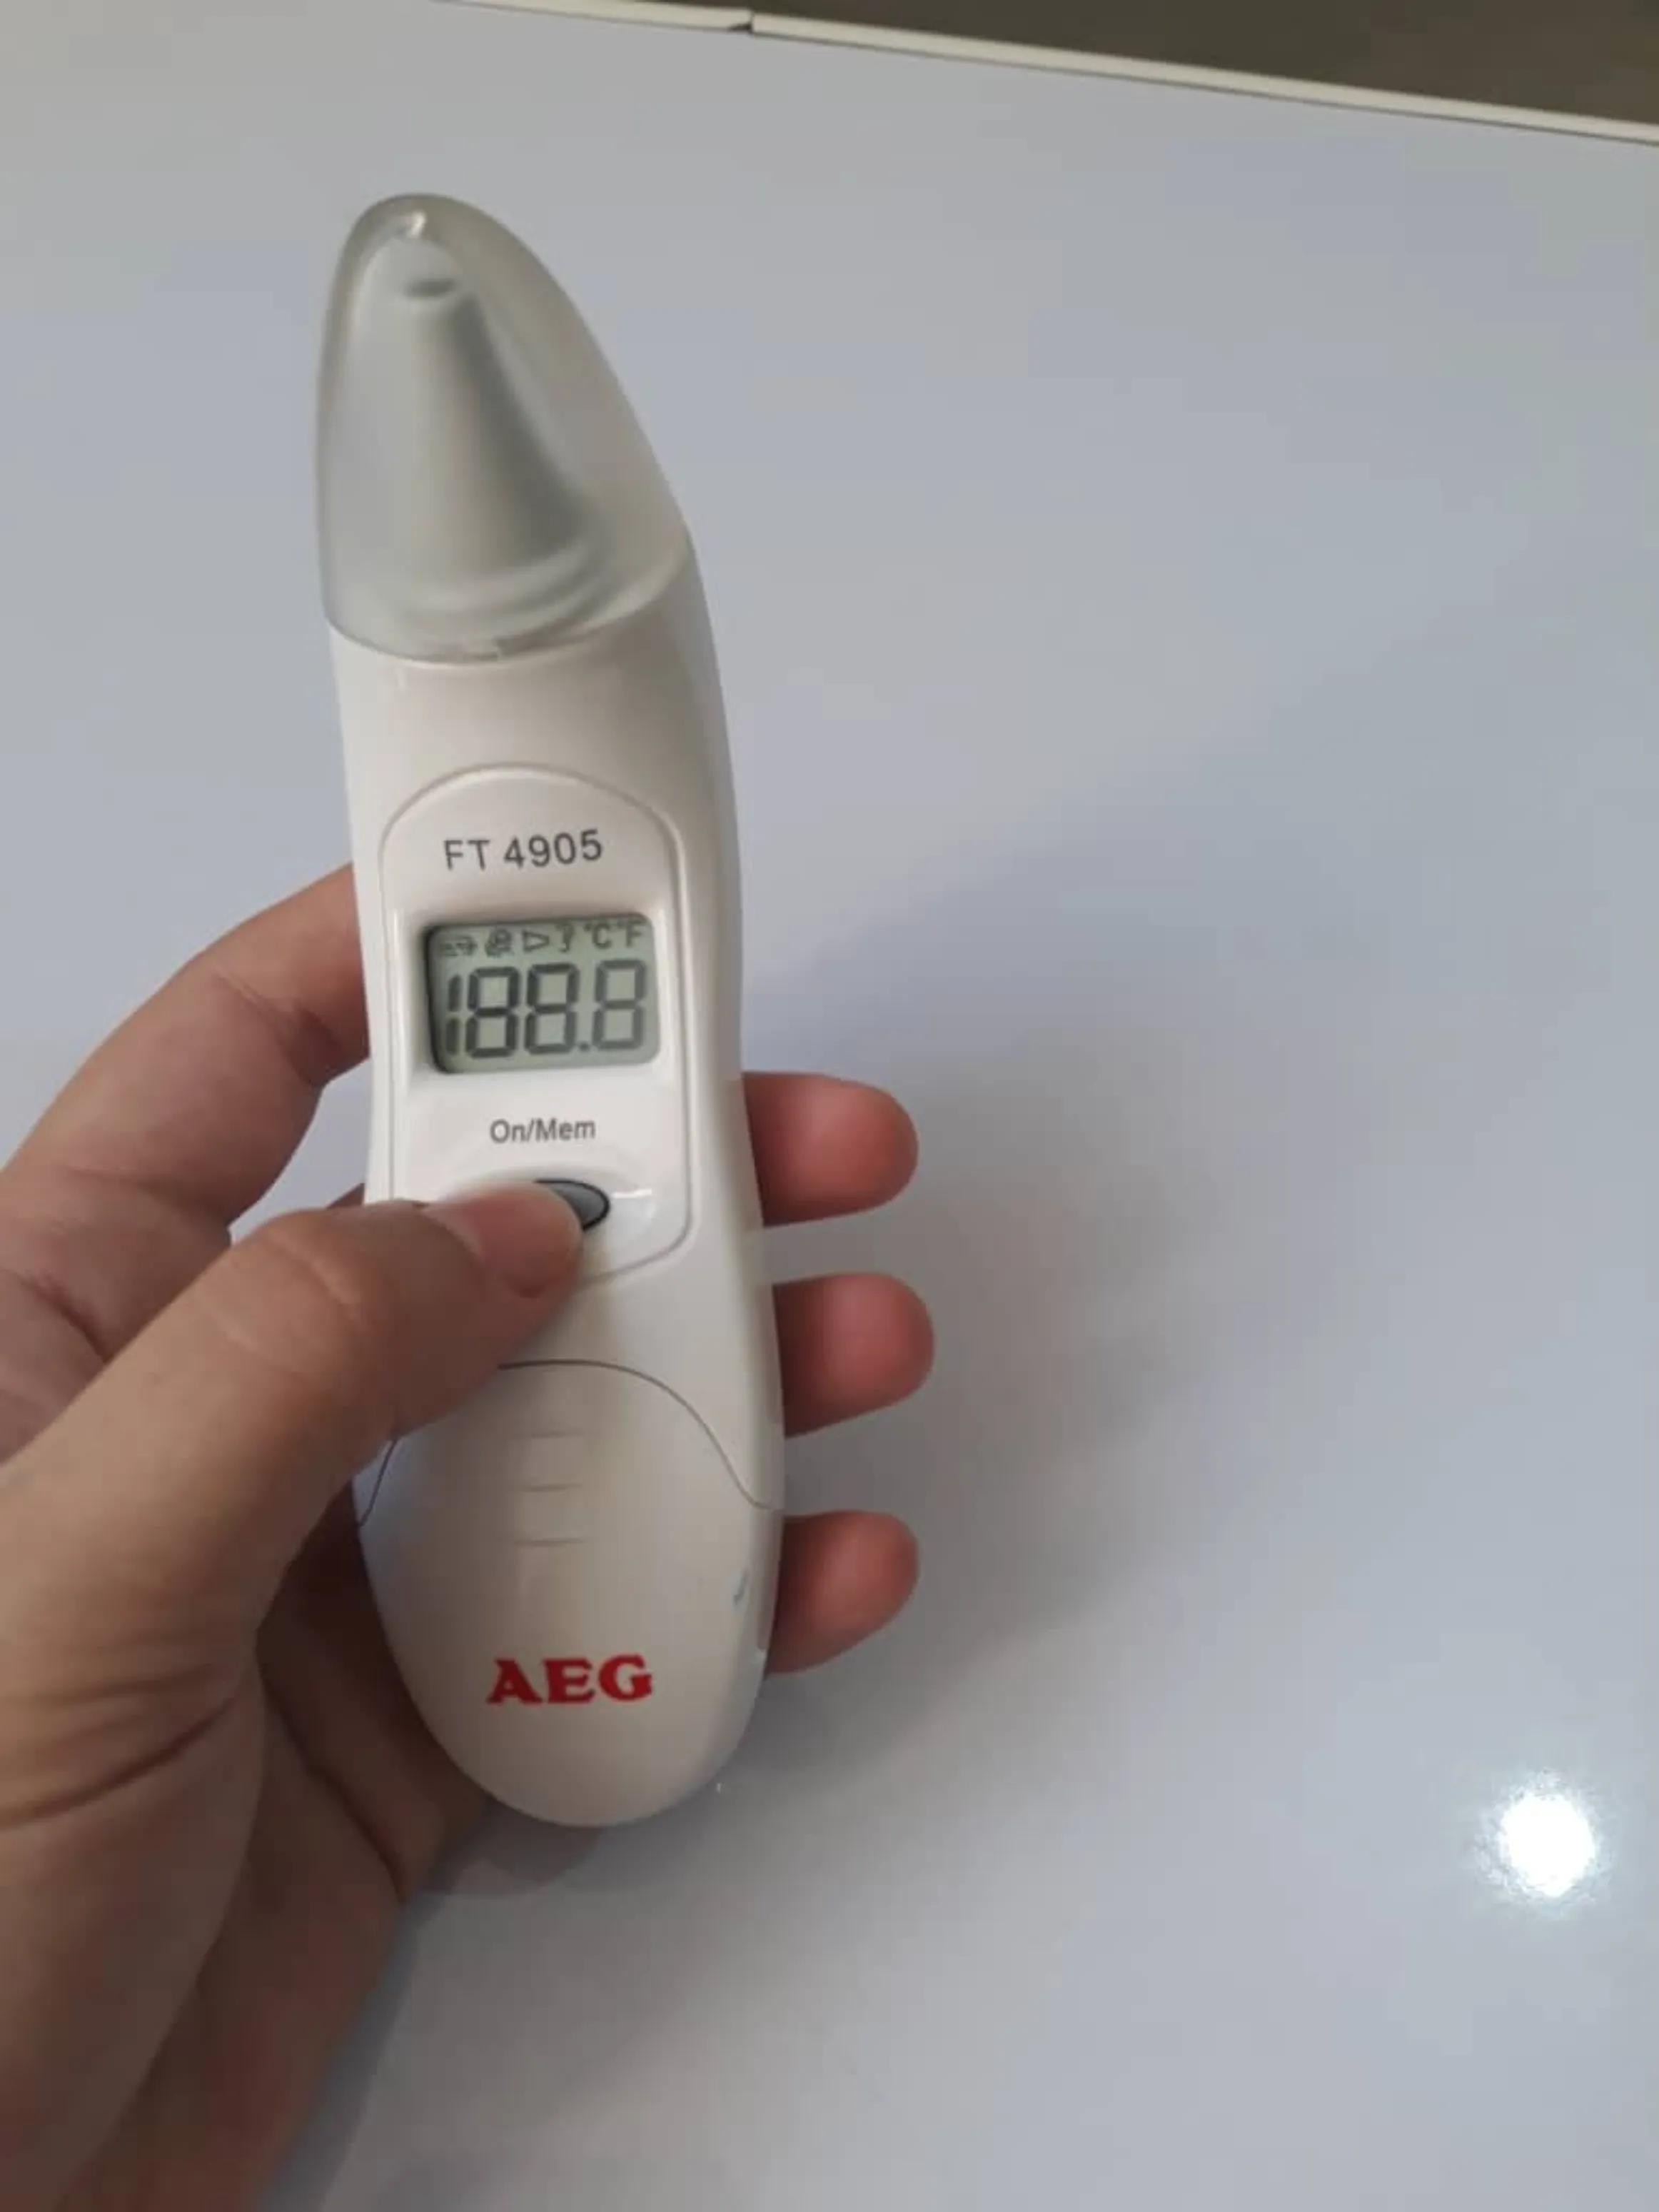 تب سنج آاگ FT 4905 سفید - AEG FT 4905 Thermometerدست دو/مدینیوم